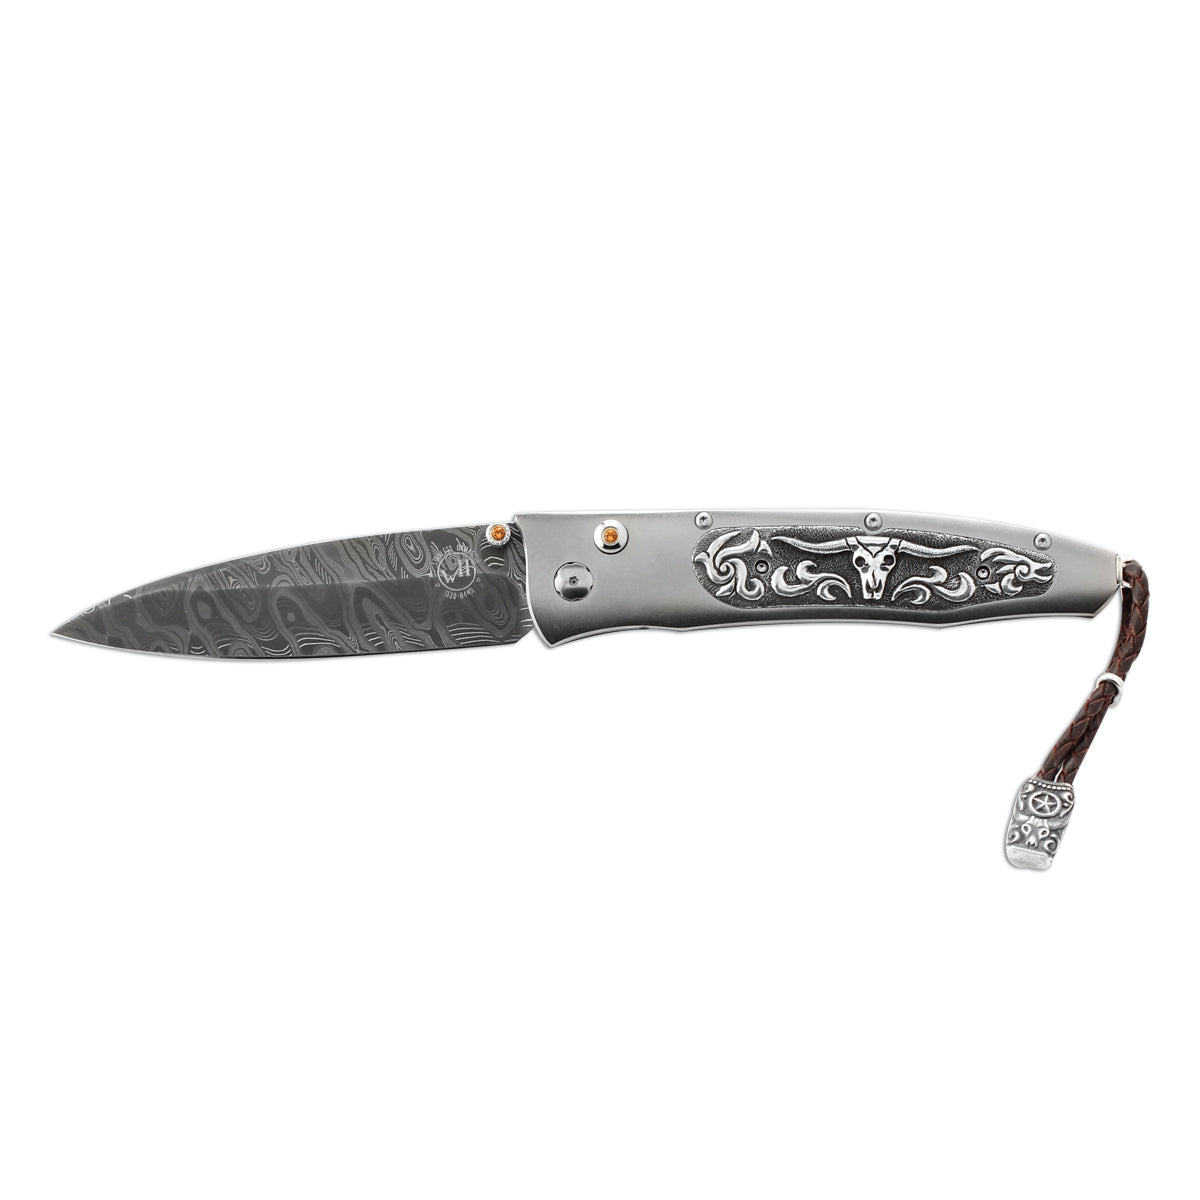 Gentac 'Longhorn' Knife 347805